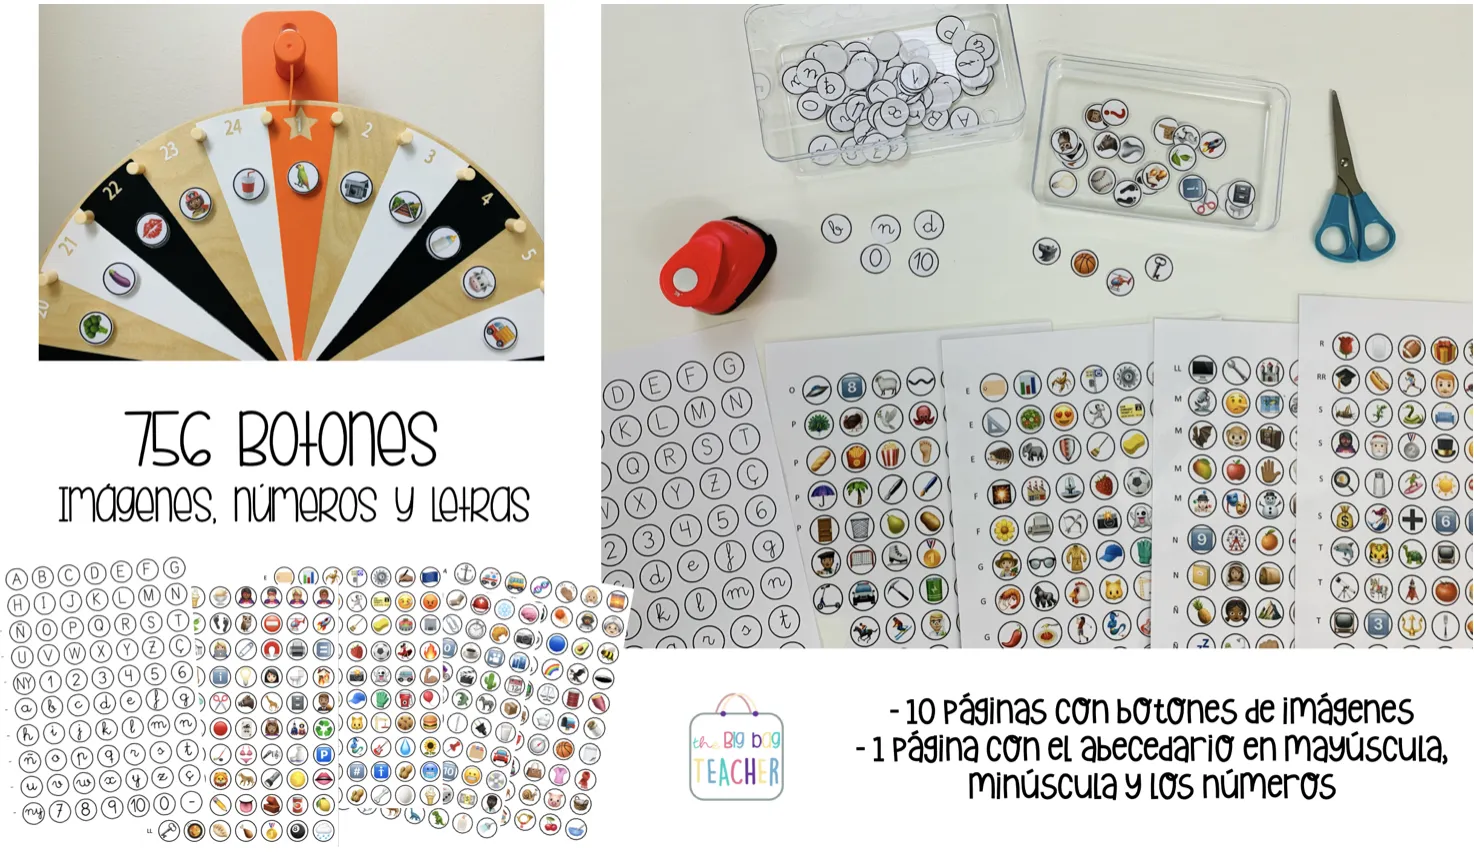 756 botones: redondas con imágenes, números y letras, ¡para jugar!